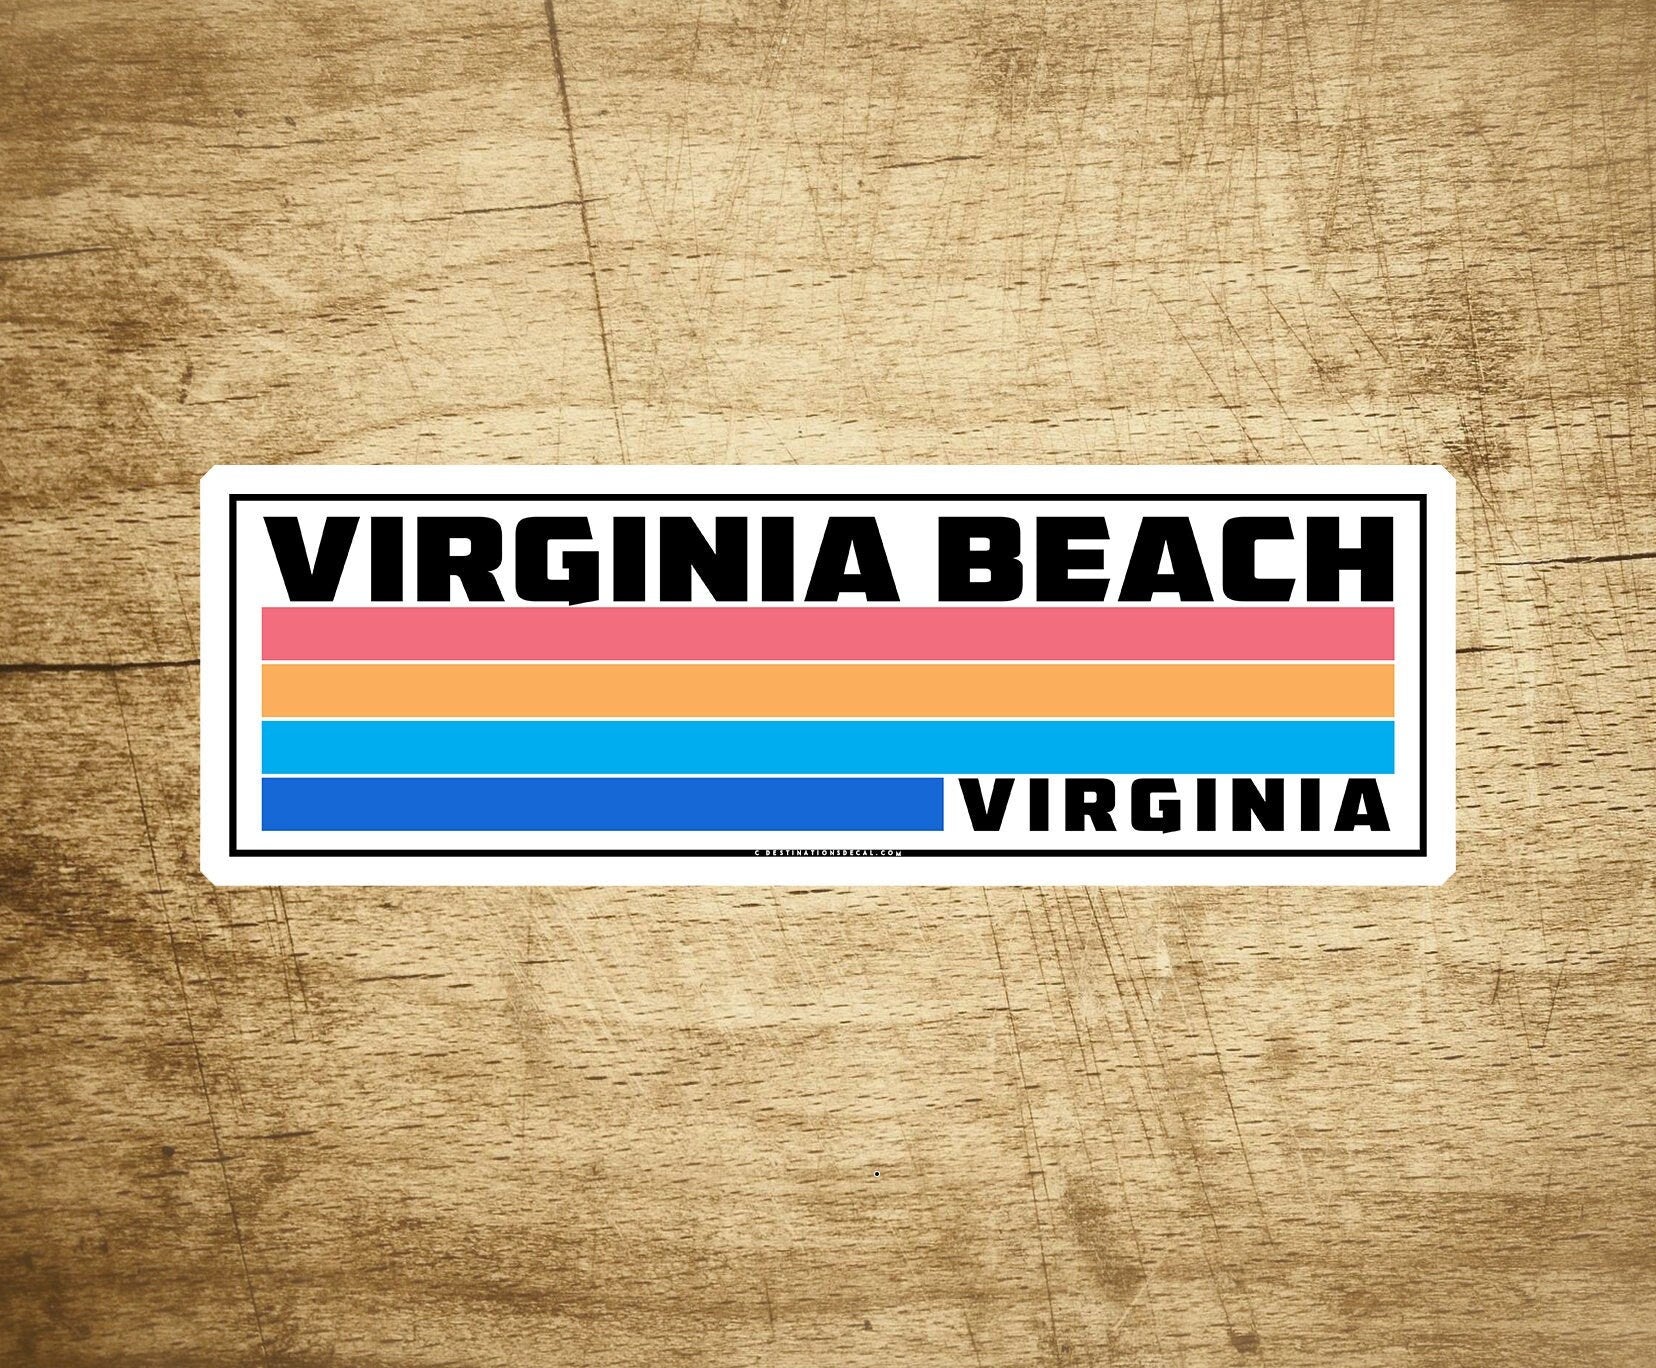 Virginia Beach Virginia Sticker Travel Decal 3.75" X 1.3" Vinyl Indoor Outdoor Laptop